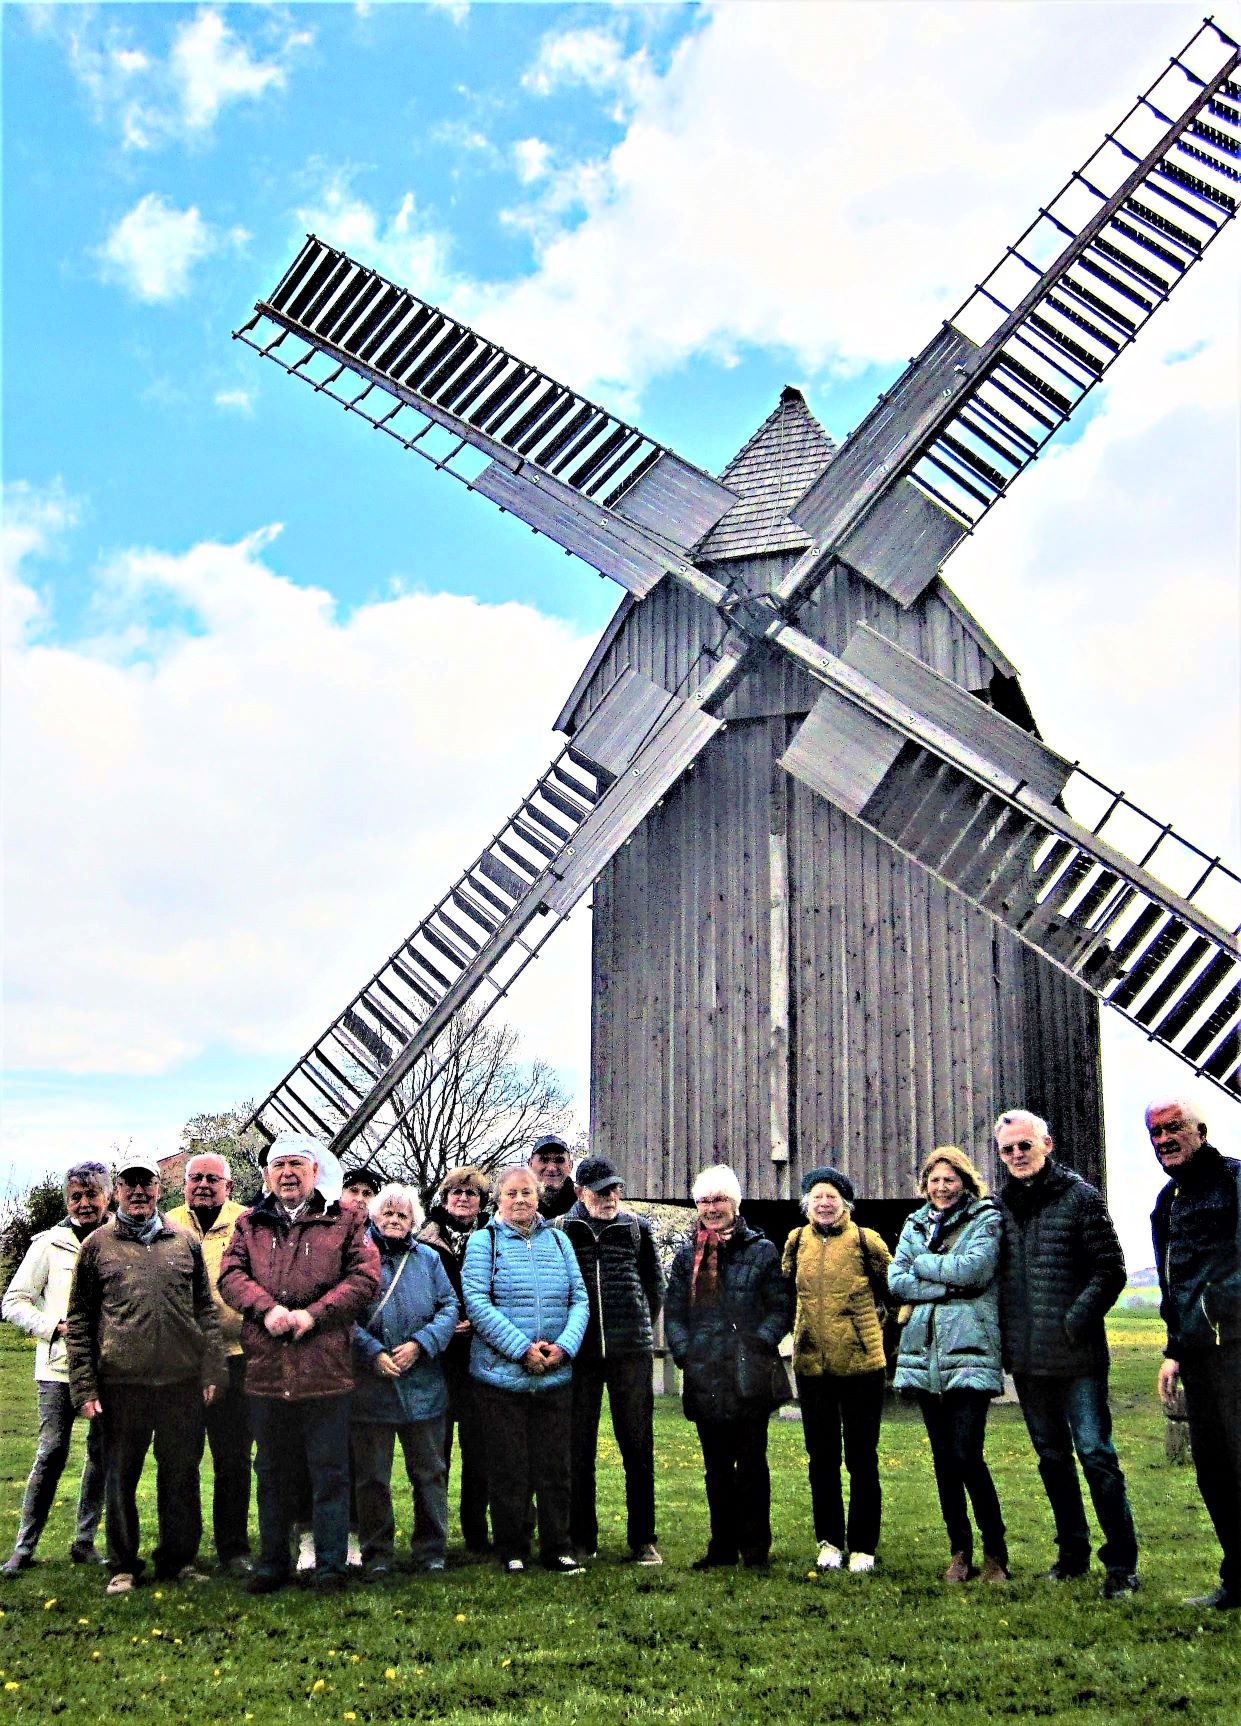 Beliebtes Fotomotiv: Gruppenbild mit Windmühle Krippendorf.
